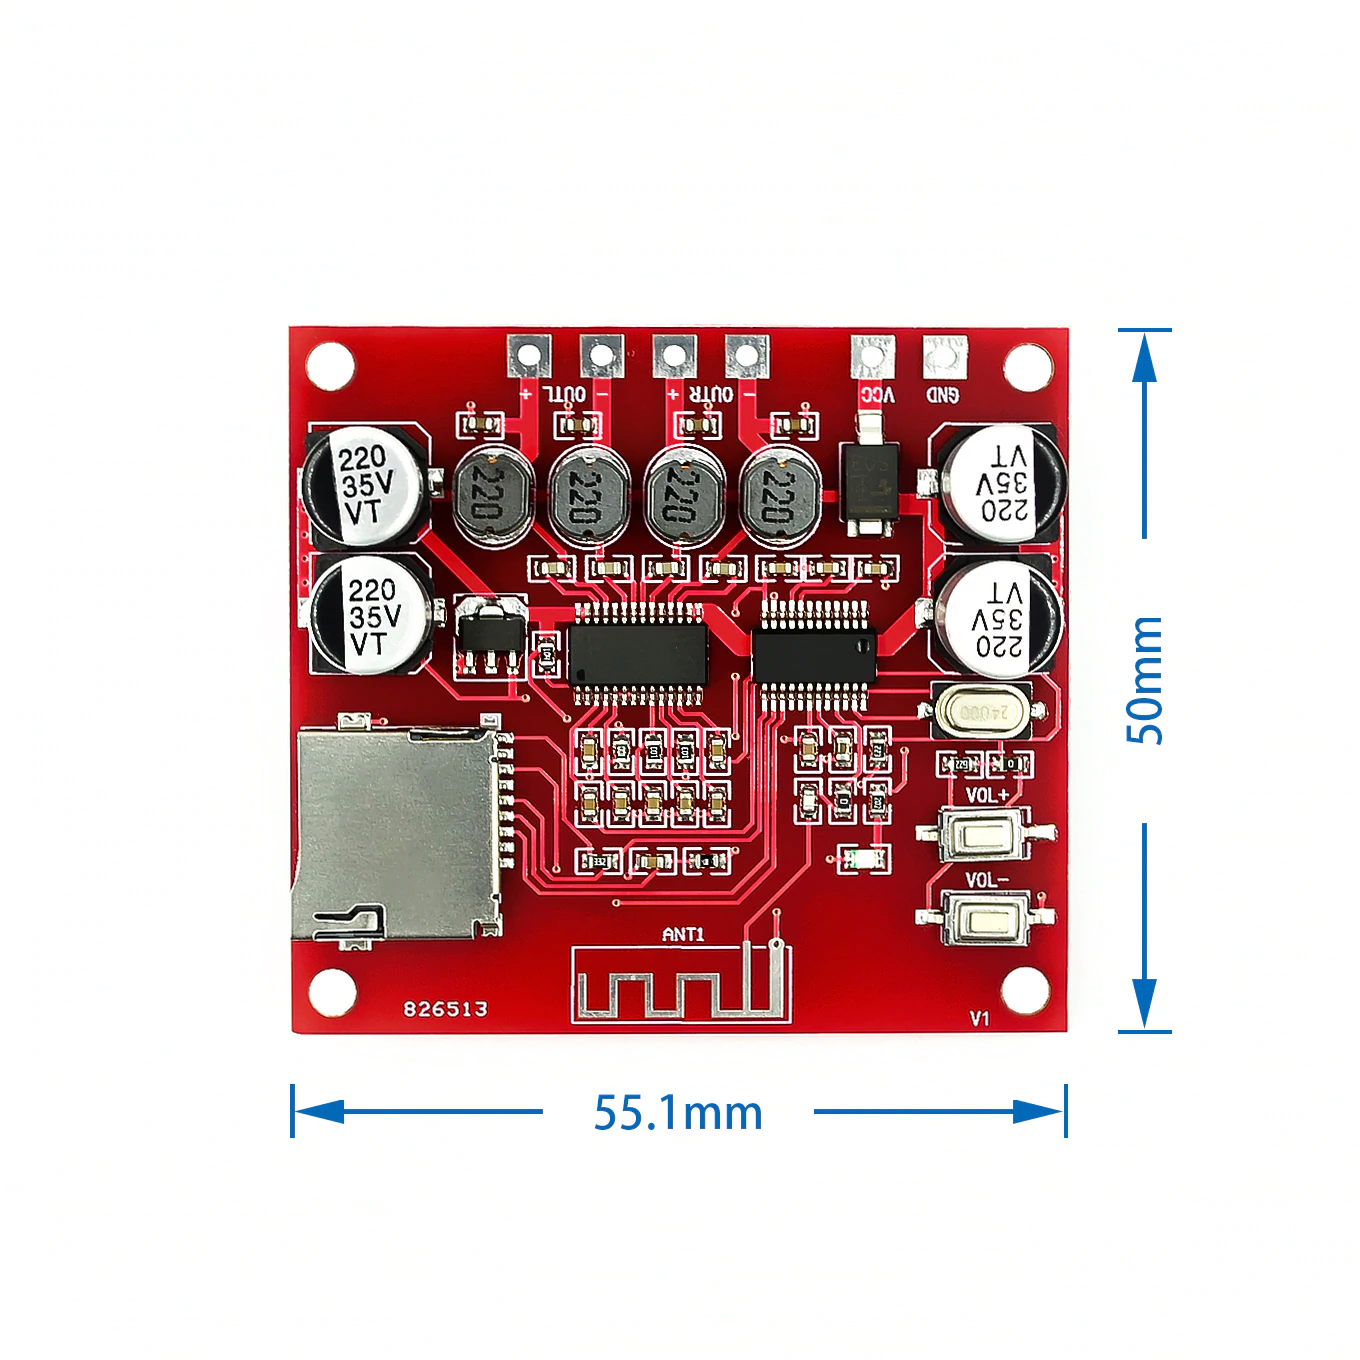 Reproductor Mp3 Bluetooth Amplificador